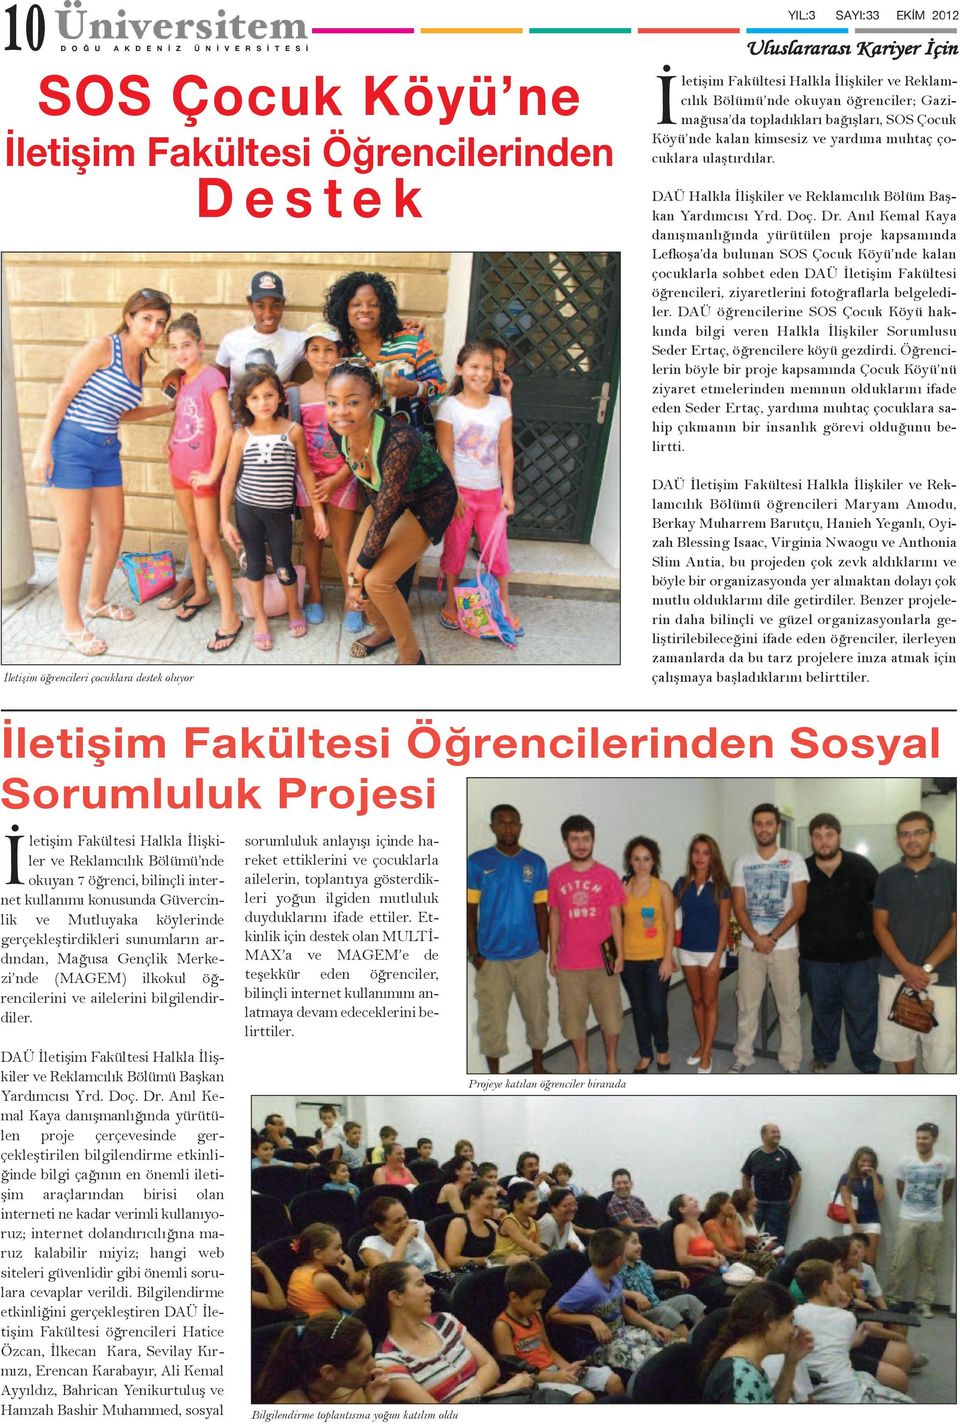 Anıl Kemal Kaya danışmanlığında yürütülen proje kapsamında Lefkoşa da bulunan SOS Çocuk Köyü nde kalan çocuklarla sohbet eden DAÜ İletişim Fakültesi öğrencileri, ziyaretlerini fotoğraflarla